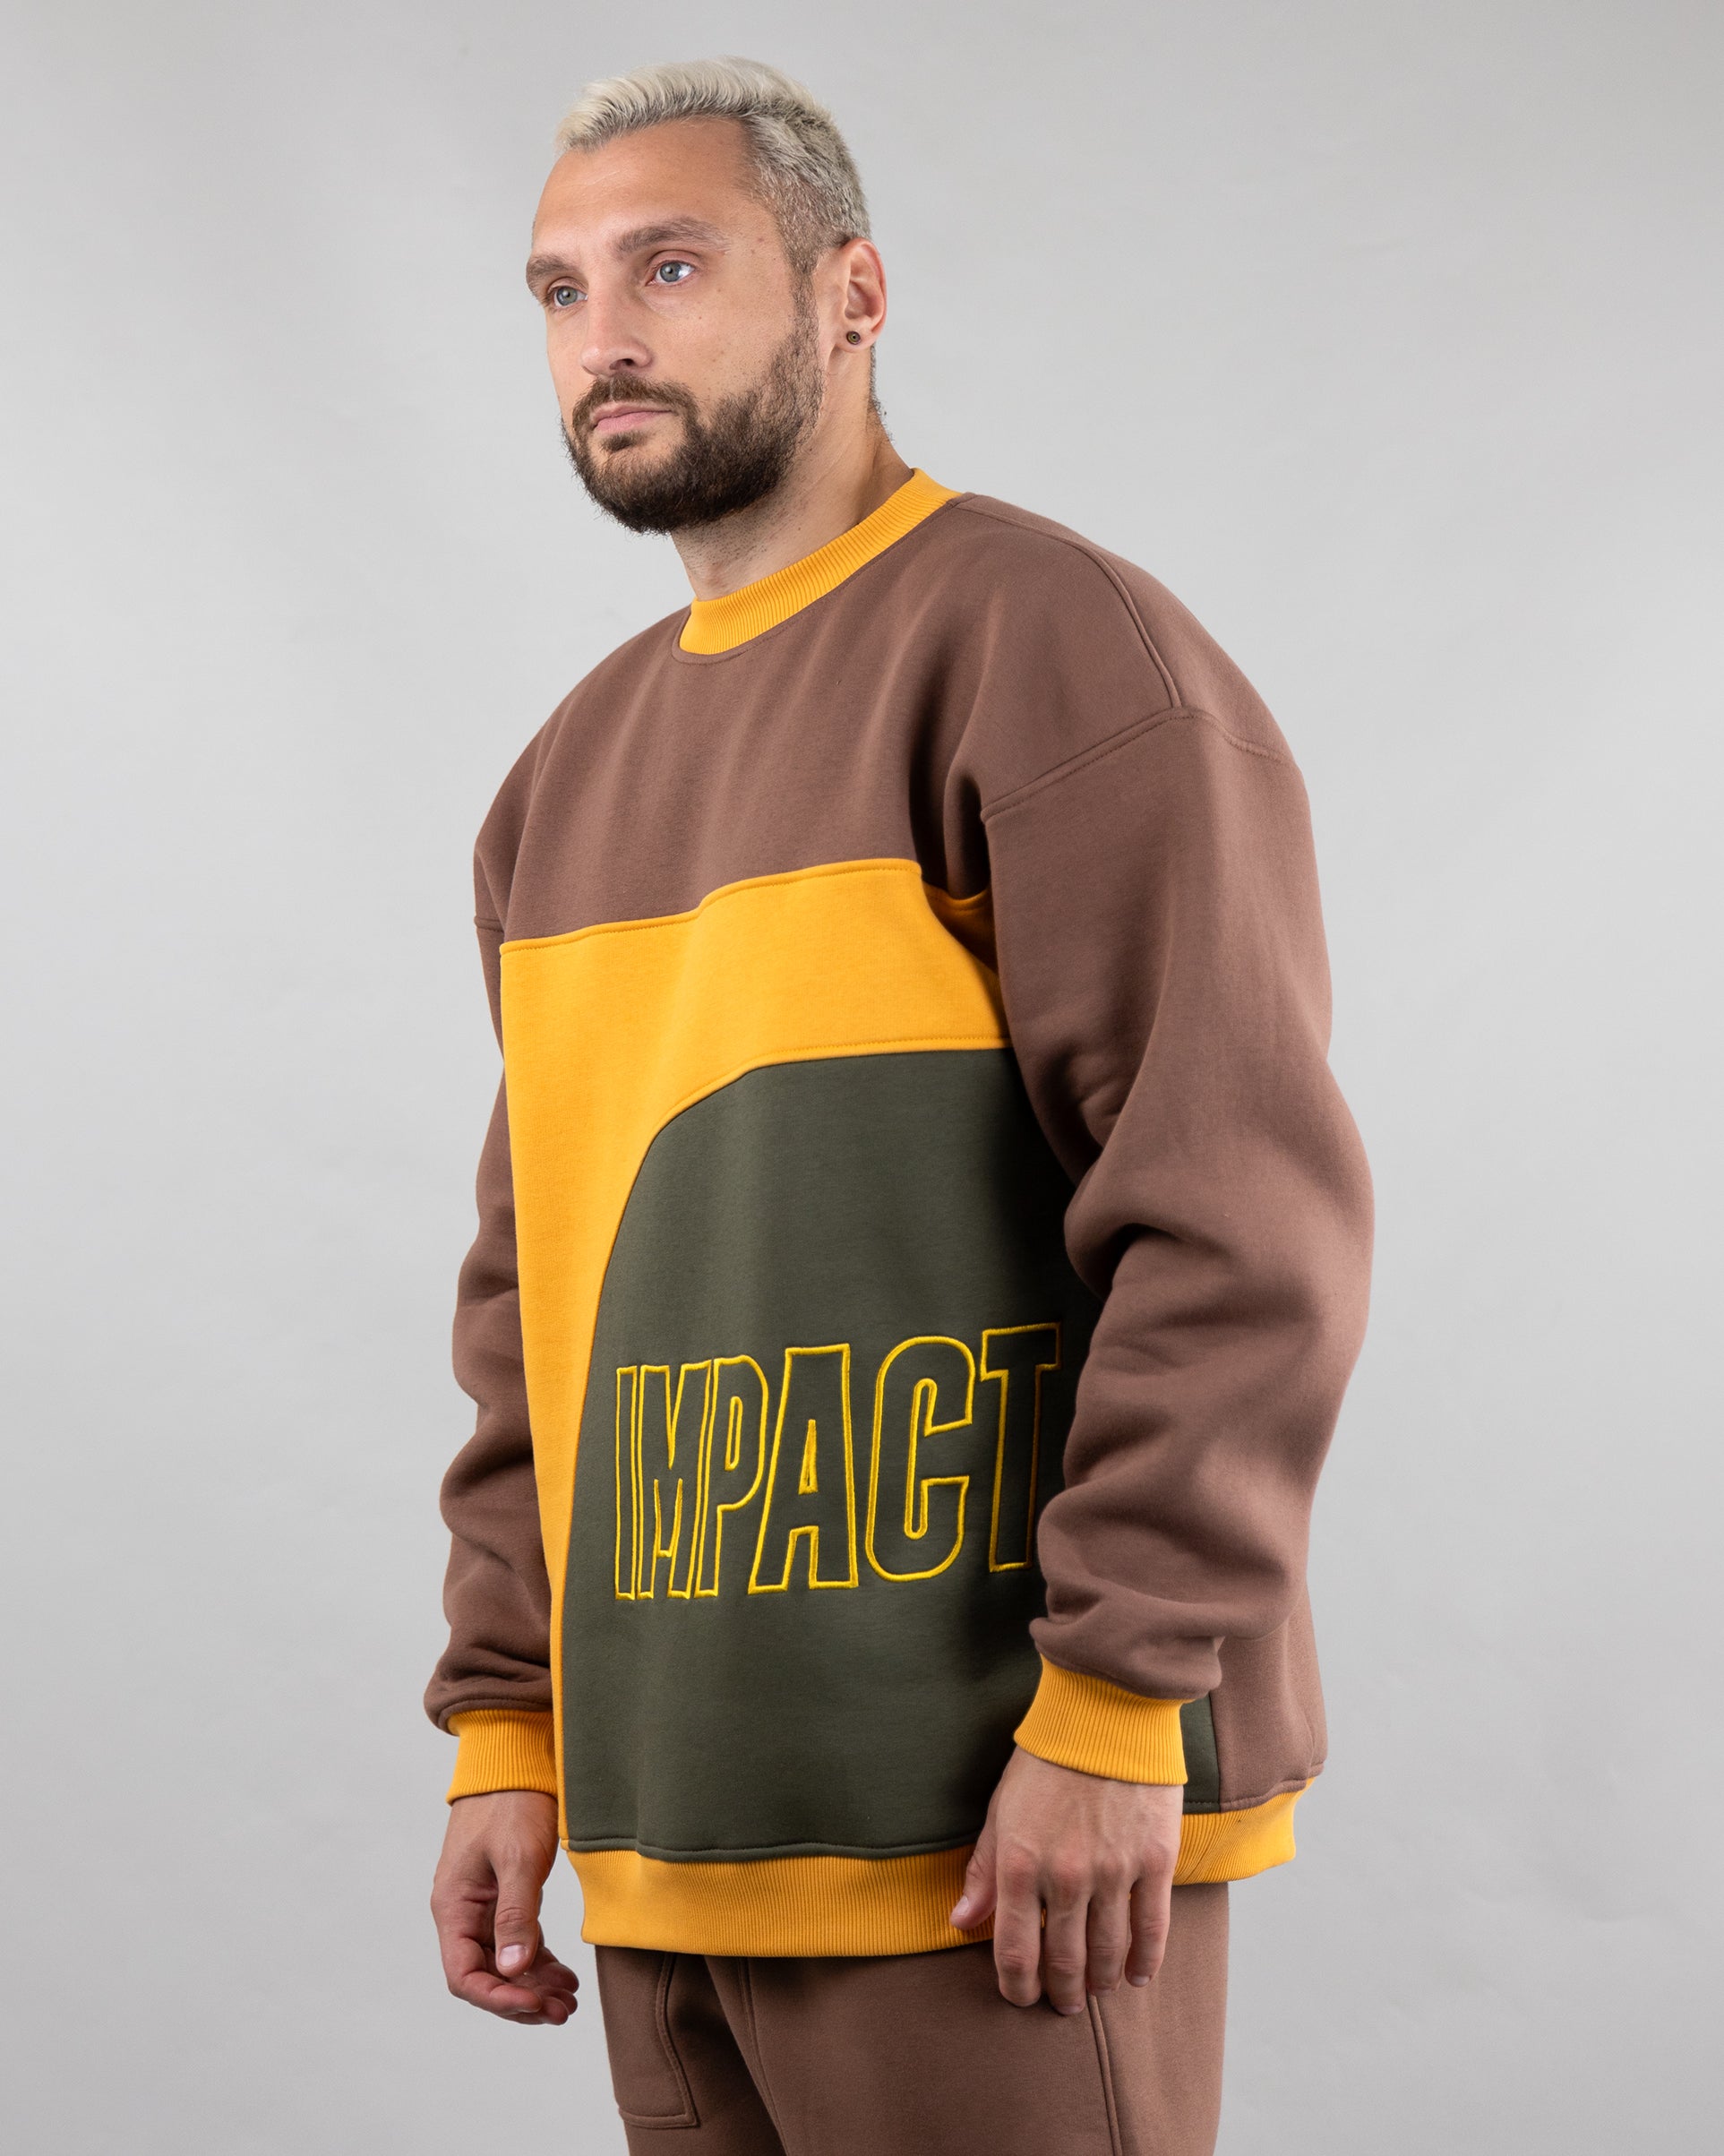 Sweatshirt "Echo", oversized casual unisex sweatshirt with embroidery. Brown/yellow/khaki